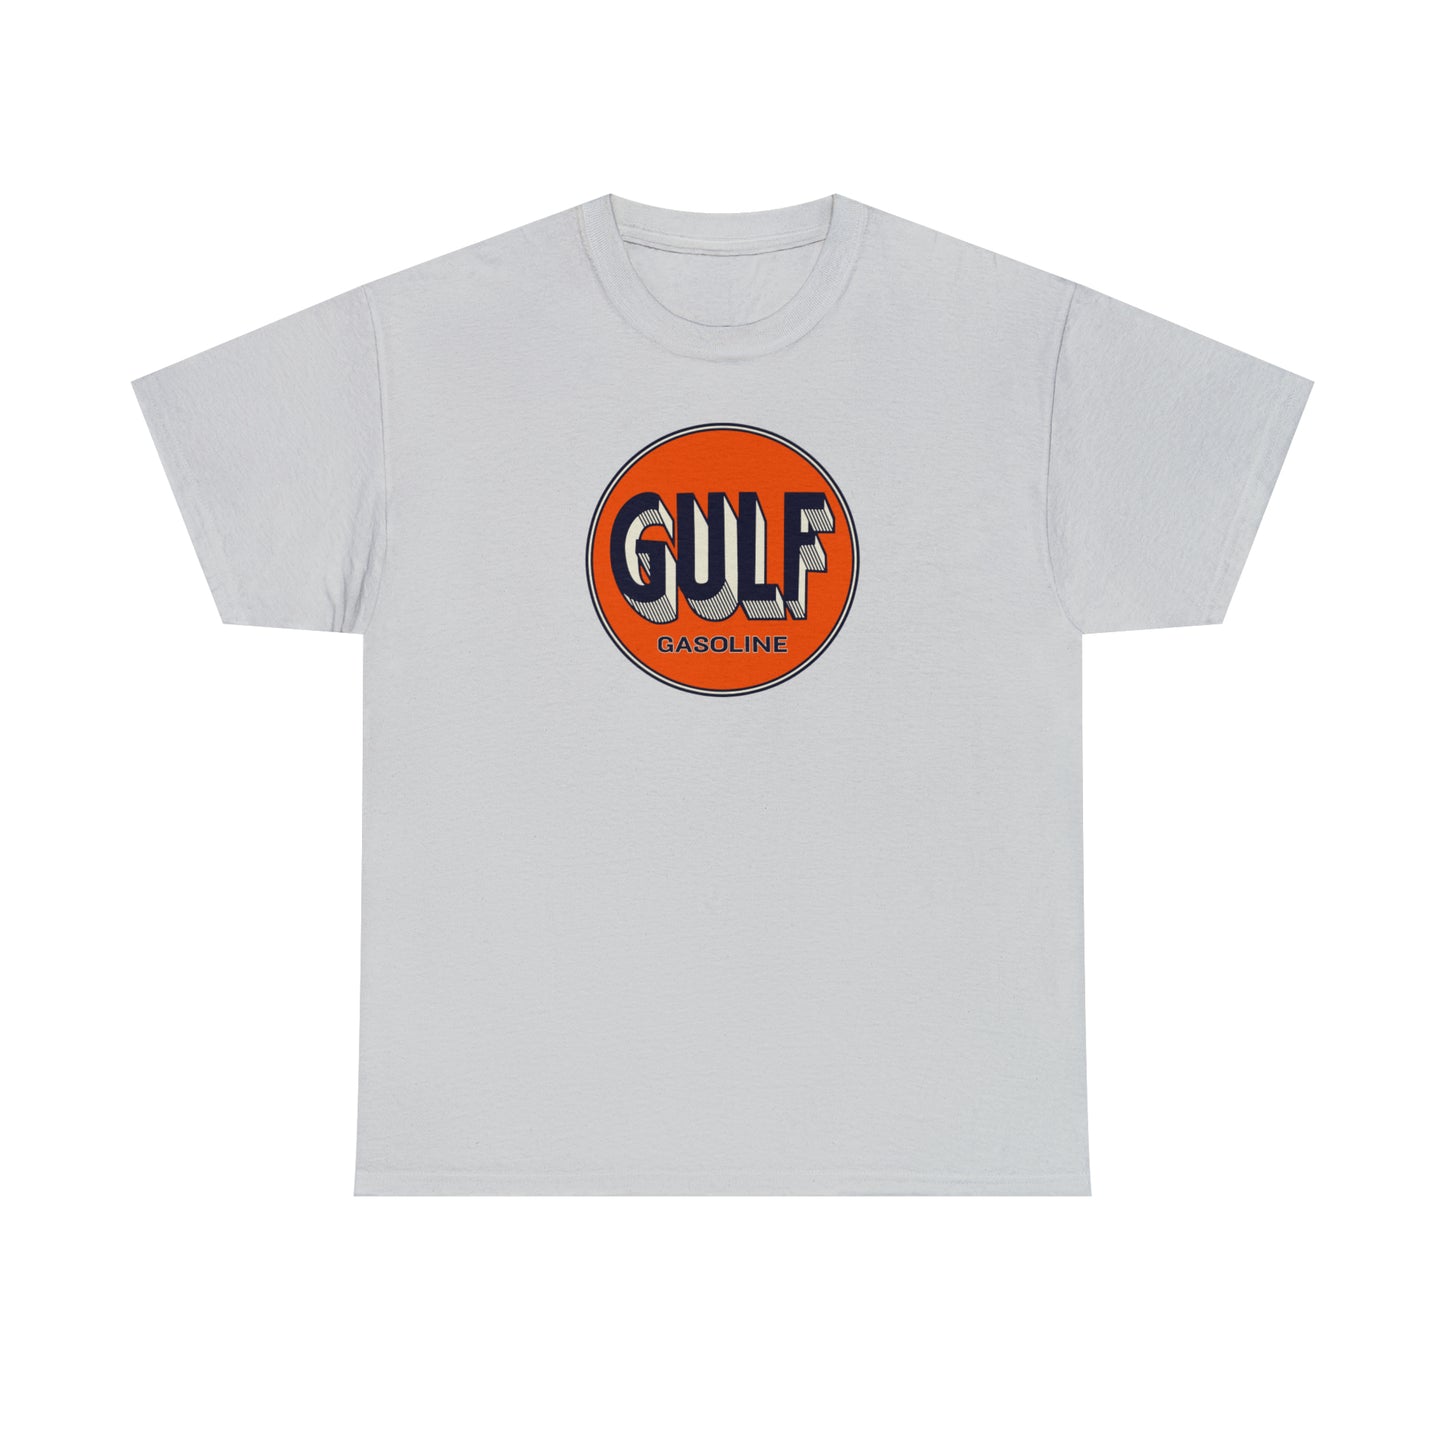 Gulf T-Shirt